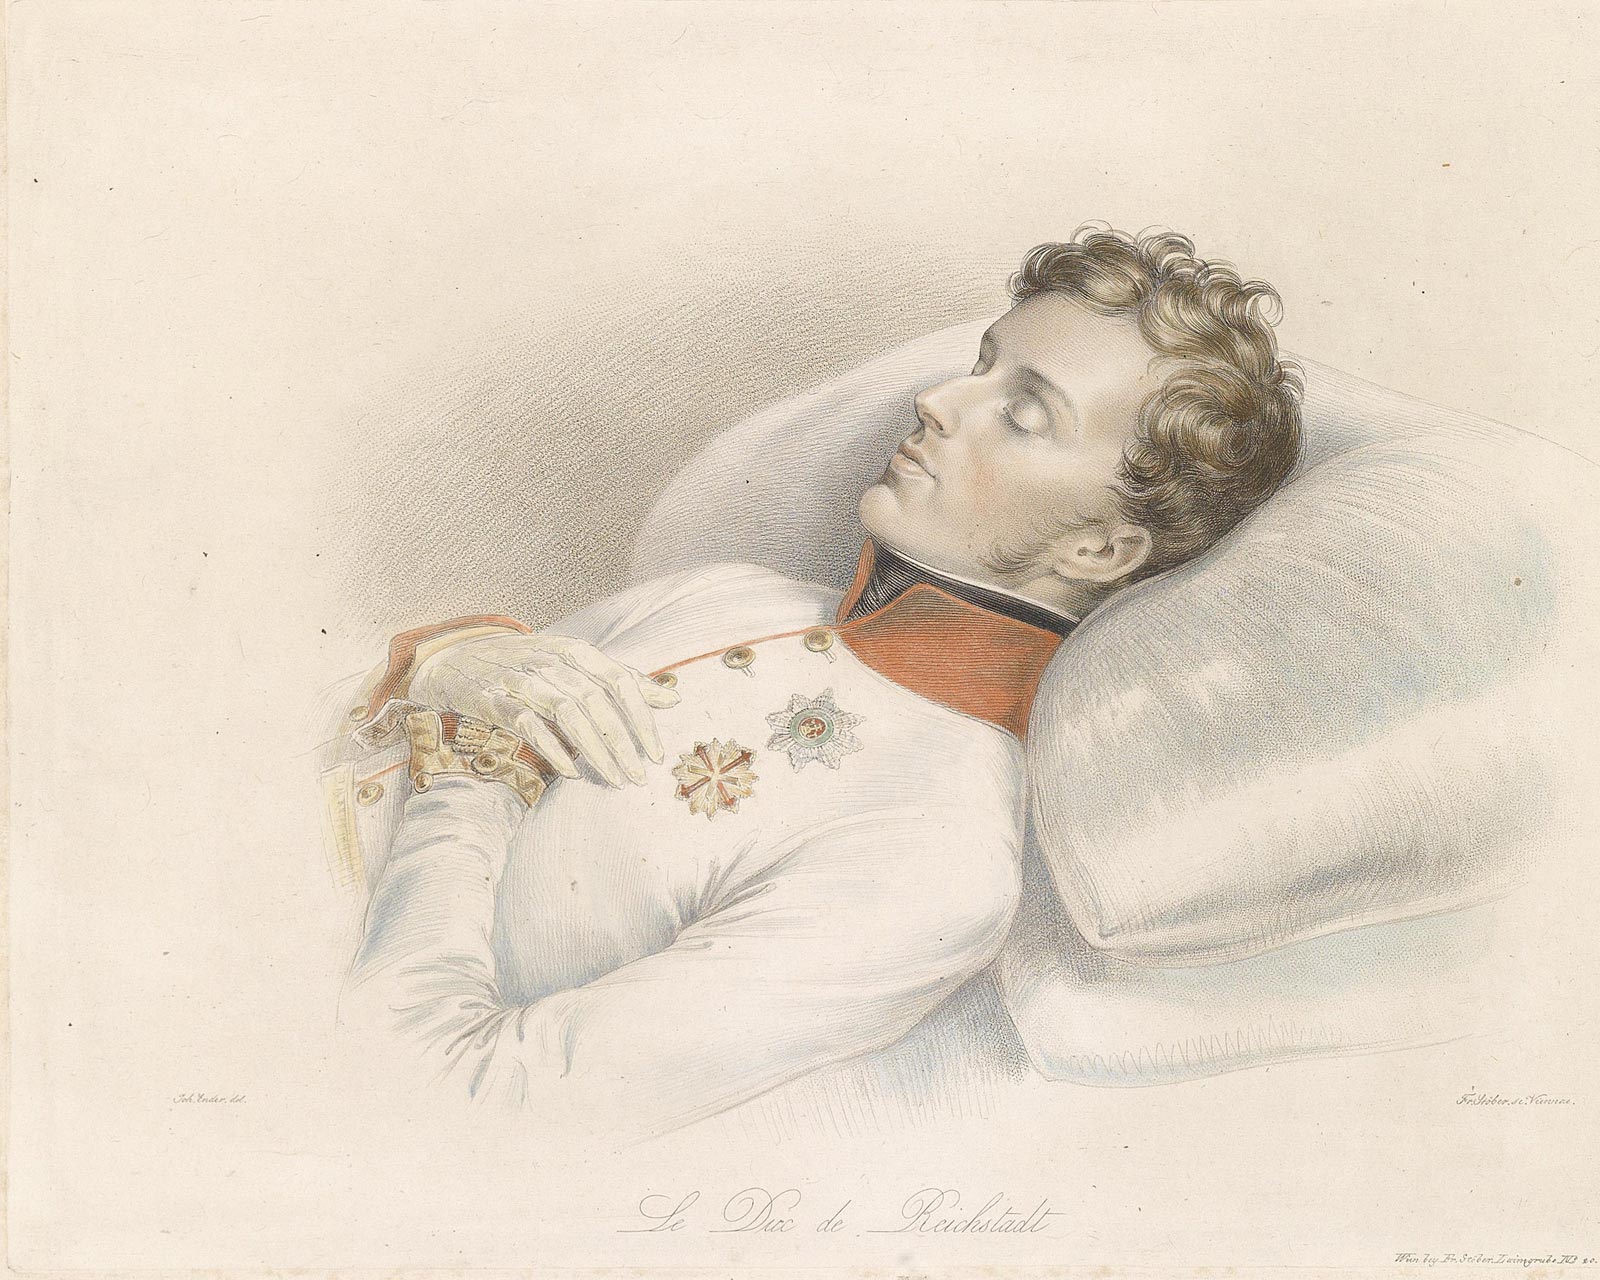 Наполеон II на смертном одре, 1832 г. Франц Ксавер Штёбер.